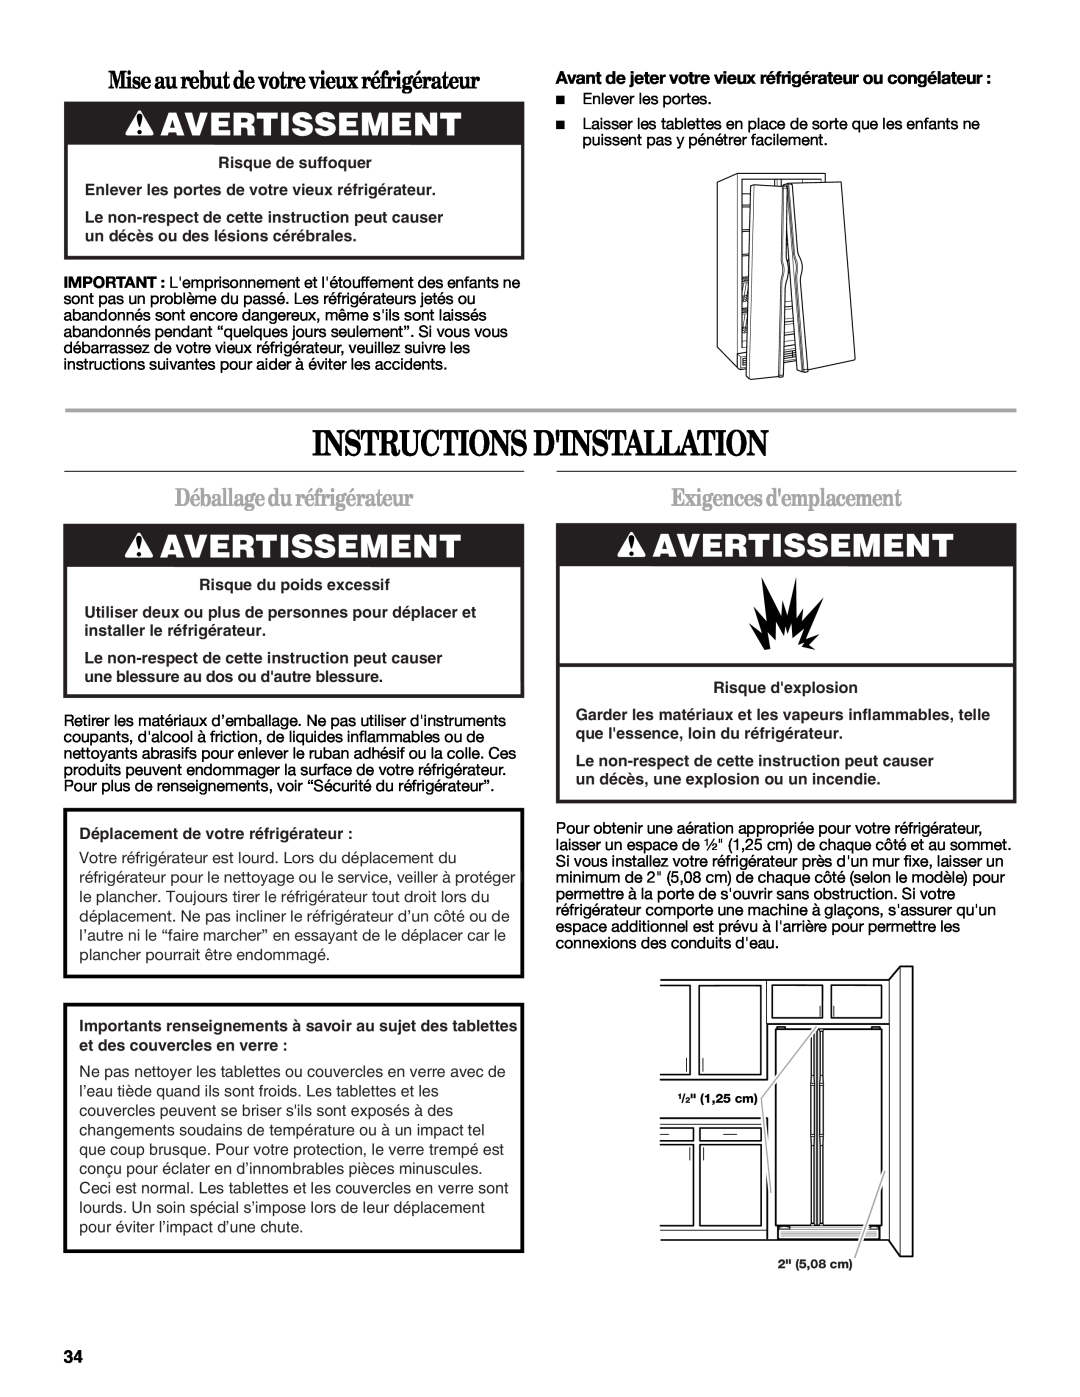 Whirlpool GS6NHAXV Instructions Dinstallation, Avertissement, Mise au rebutde votre vieux réfrigérateur, Risque dexplosion 